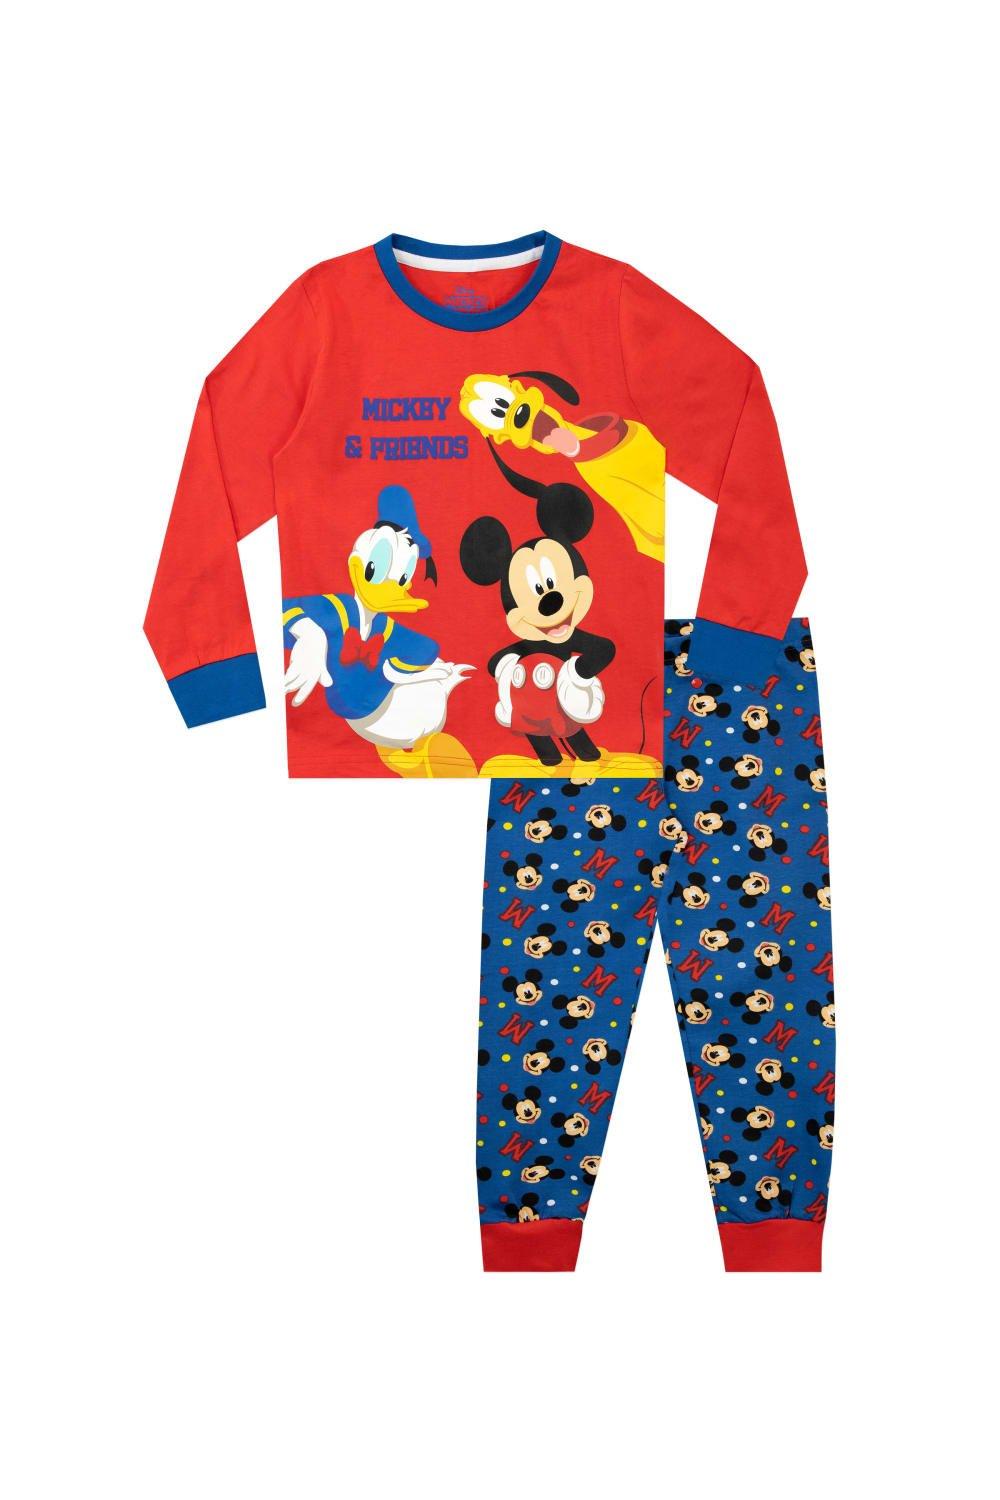 Микки Маус Дональд Дак и пижама Плутона Disney, красный конструктор disney микки и минни goofy дональд дак мультяшные фигурки куклы сборные игрушки блоки подарок для детей